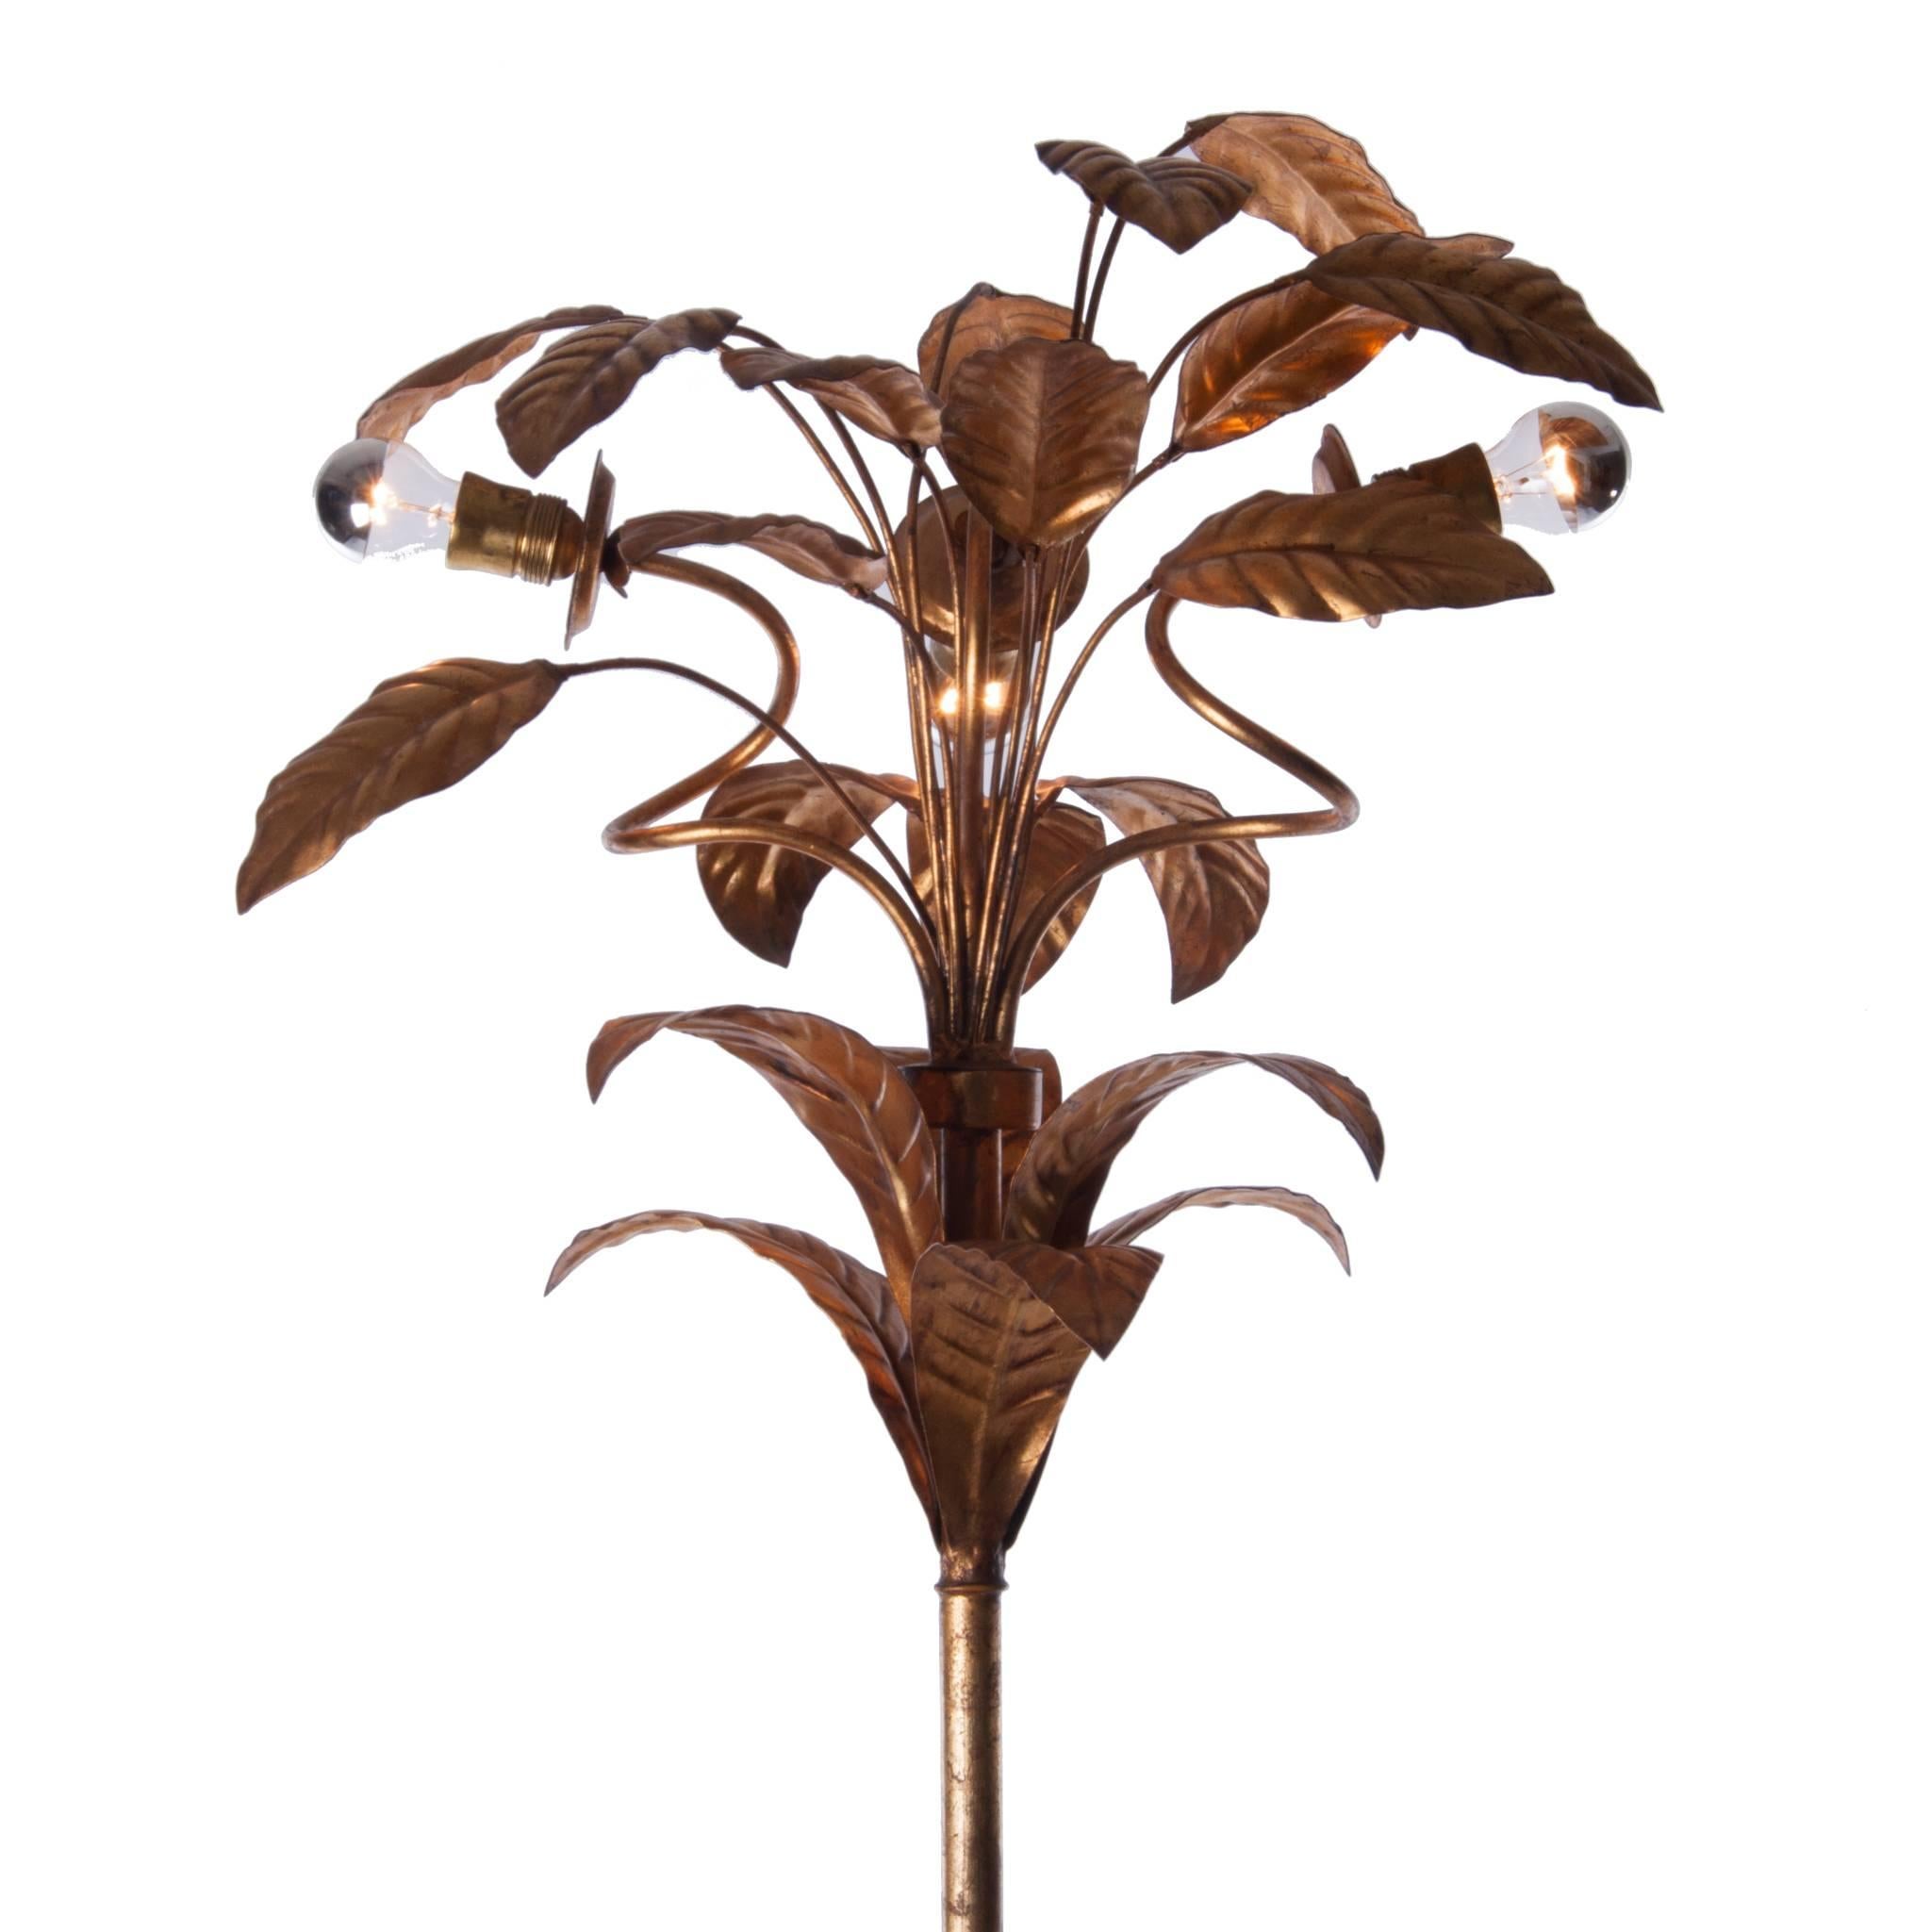 Merveilleux lampadaire en forme d'arbre ou de palmier en laiton incliné provenant d'un pied en bois, un bijou pour votre maison.